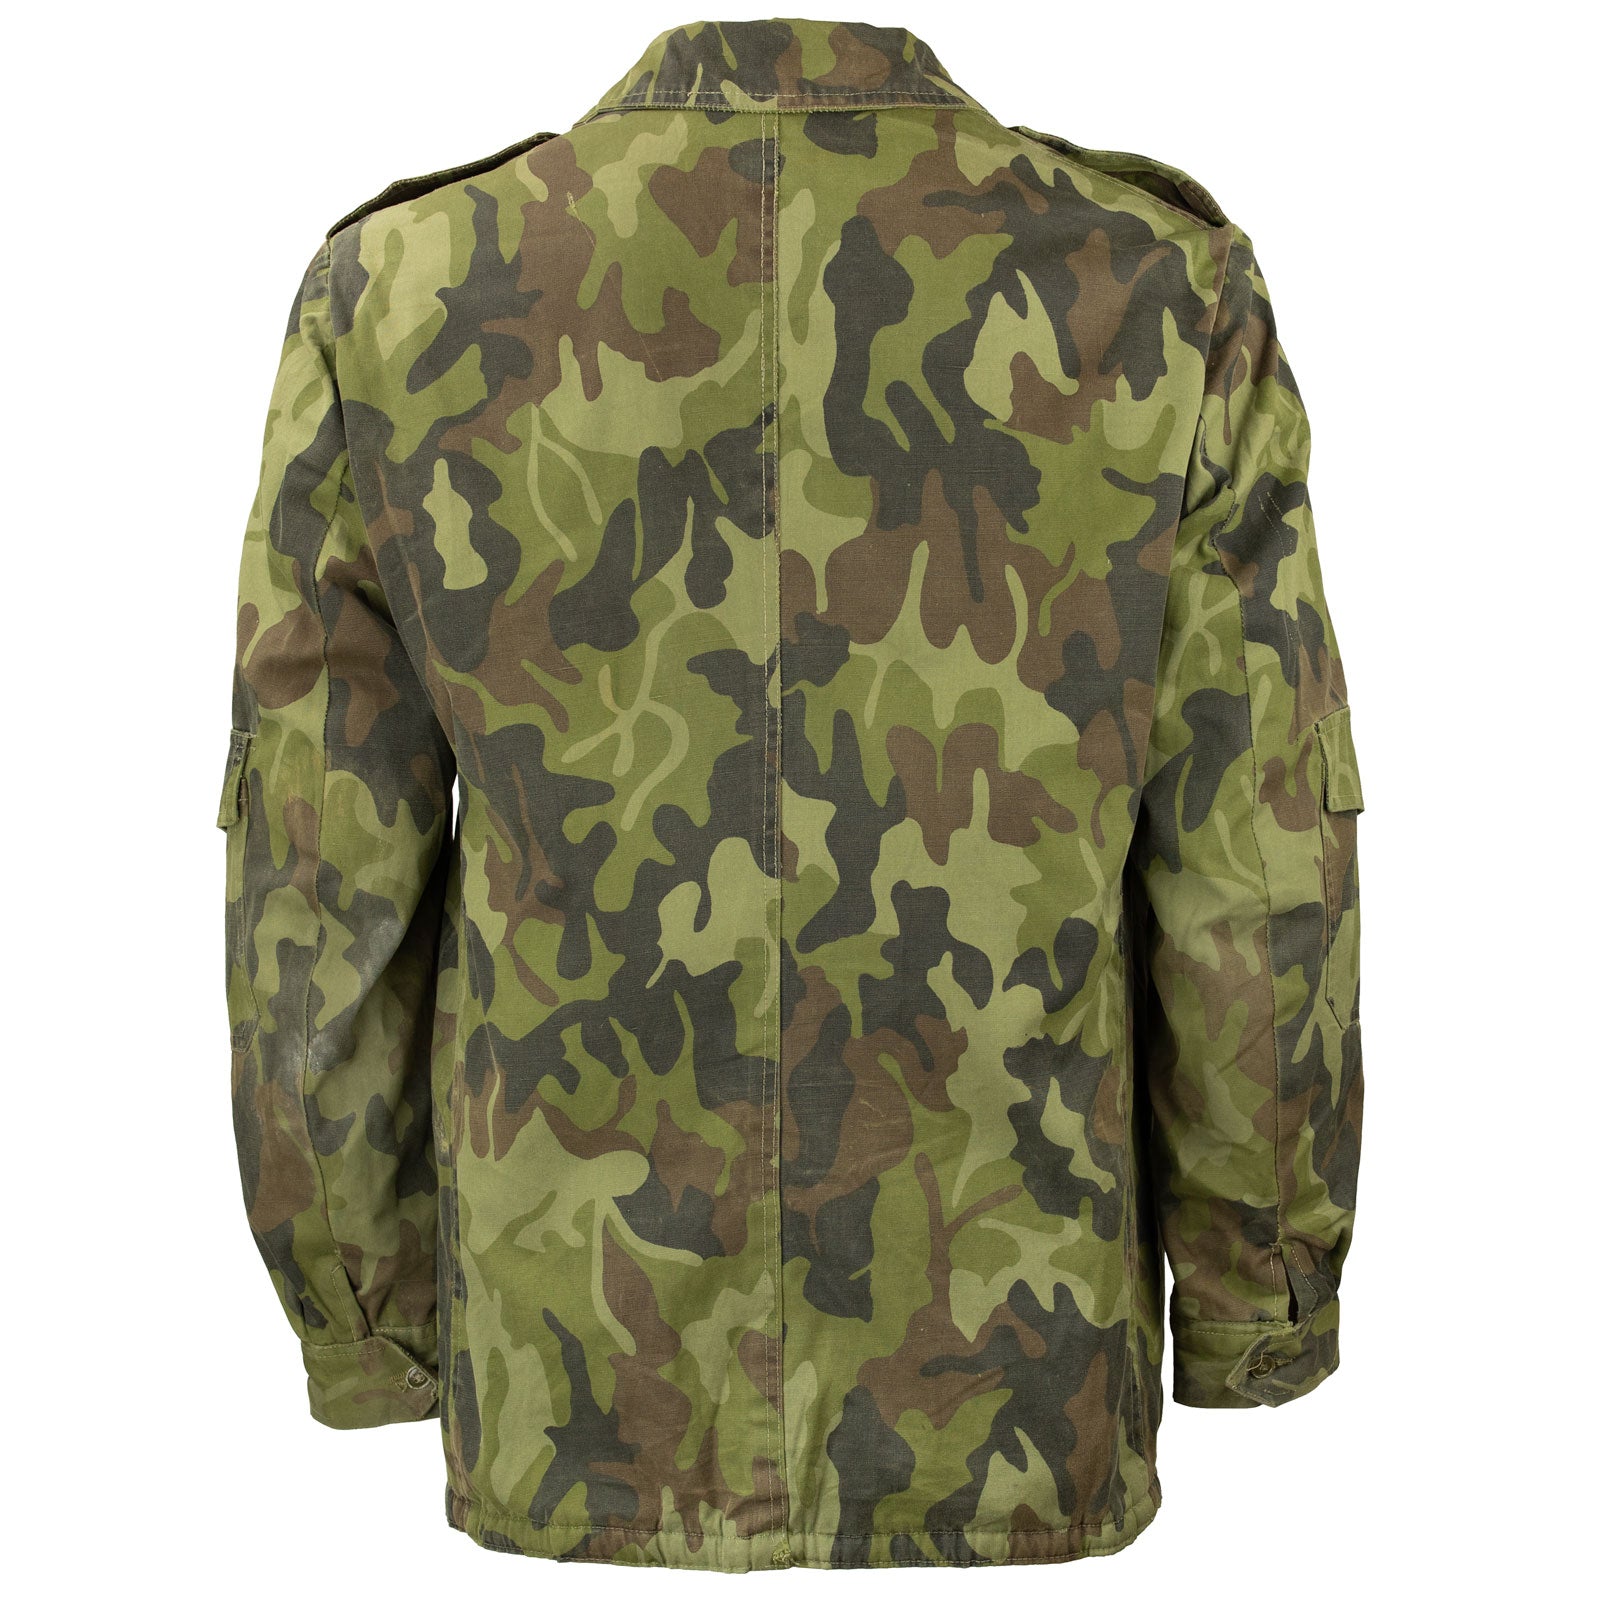 Romanian M1990 / M90 "Leaf" Pattern Jacket W/Built In Liner